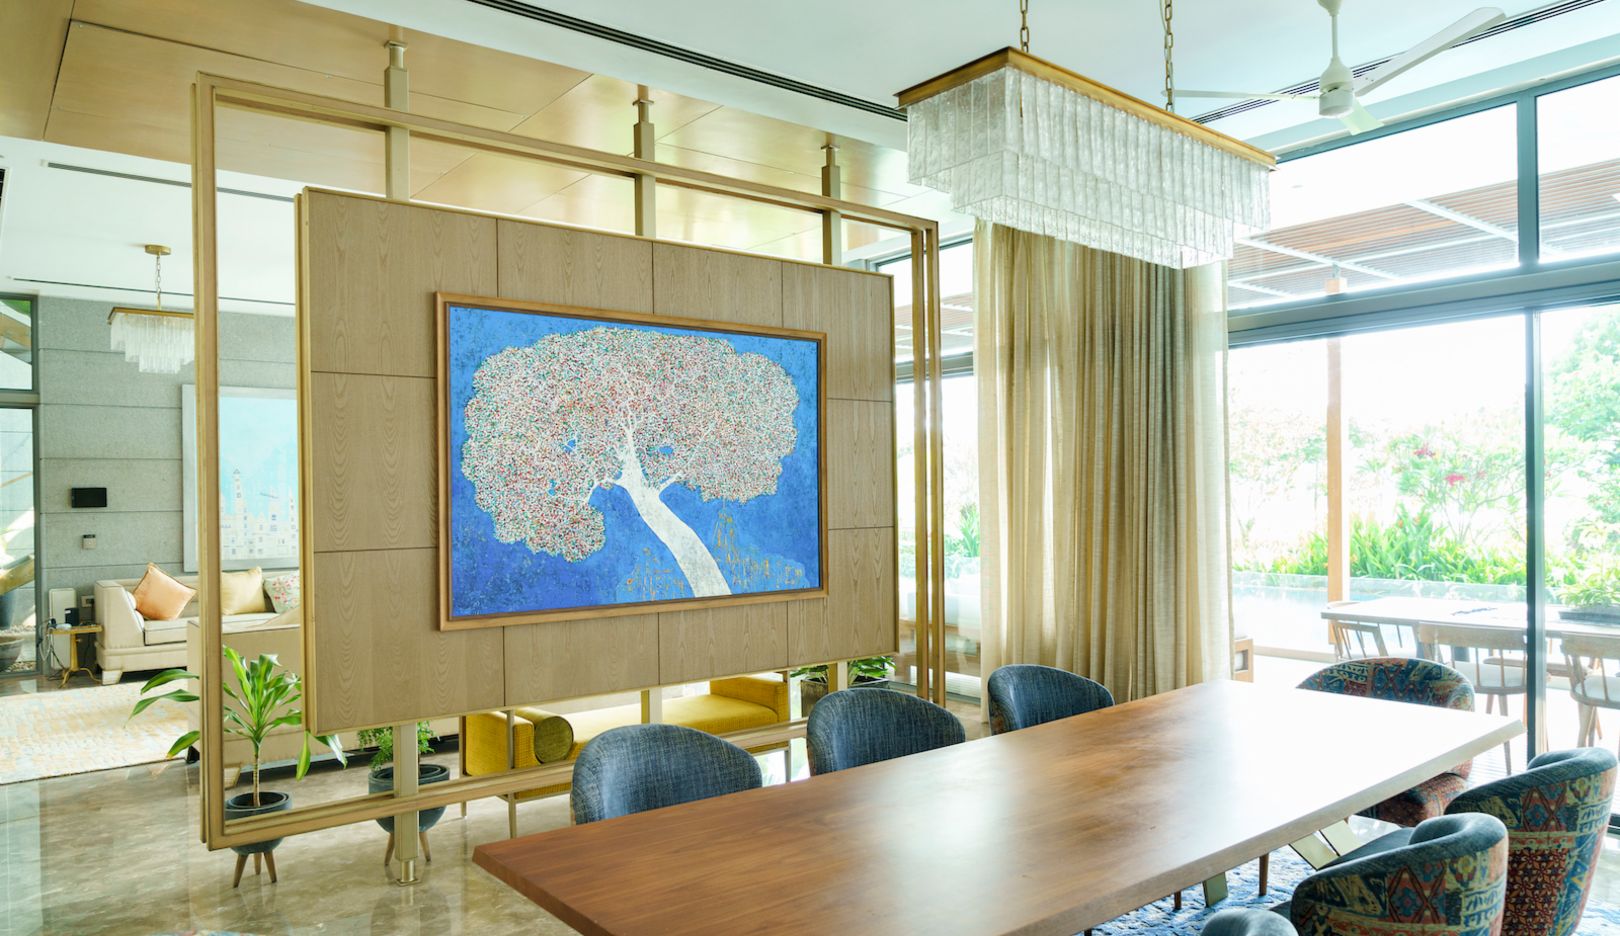 Conocemos la casa de Dulquer Salmaan: en casi todas las habitaciones hay grandes obras de arte.